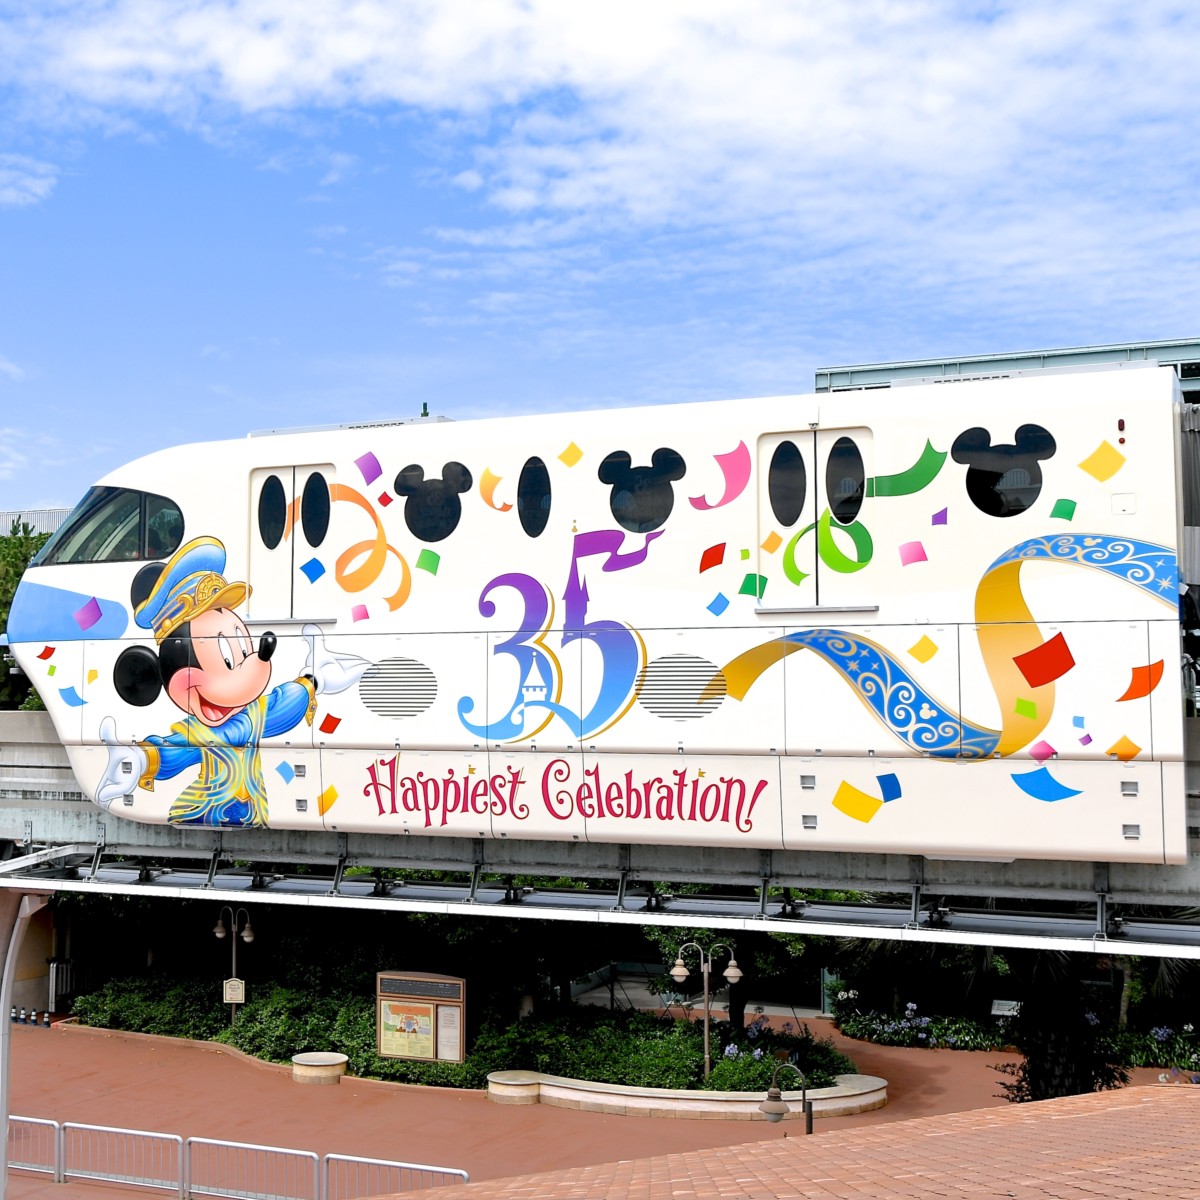 ハピエストセレブレーション ライナー運行 ディズニーリゾートライン 東京ディズニーリゾート35周年happiest Celebration